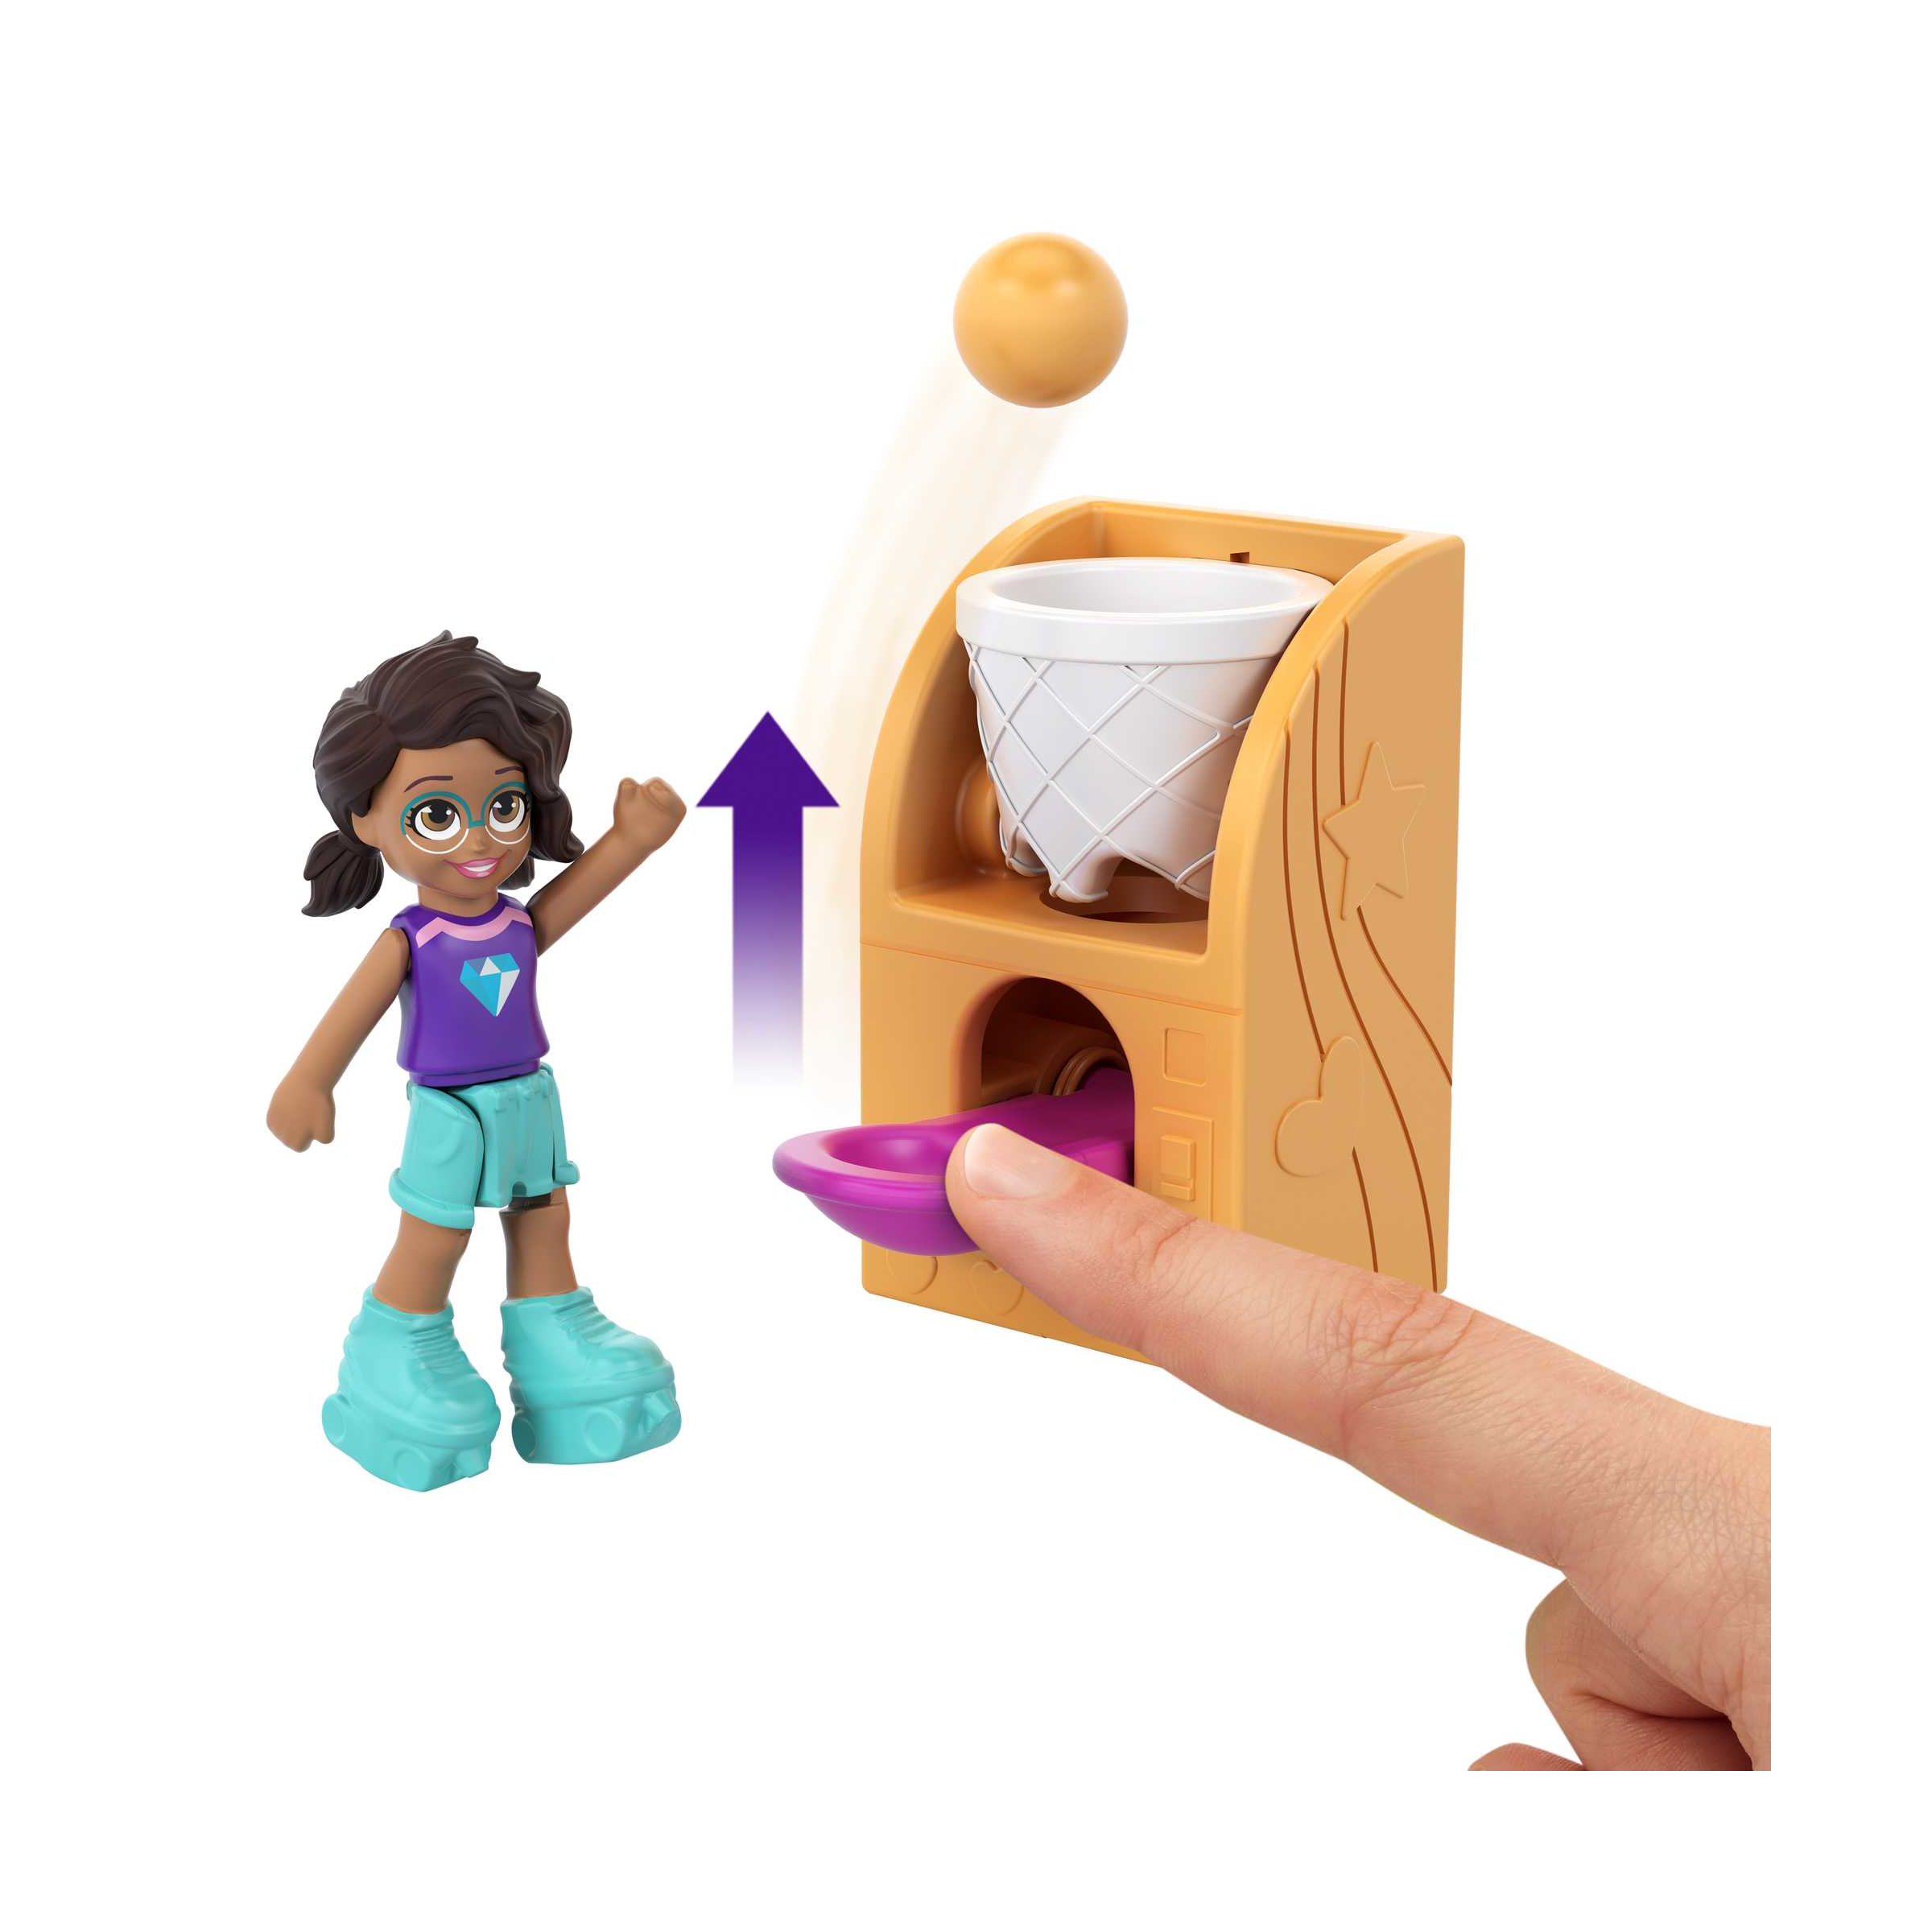 Polly pocket - cofanetto salagiochi con accessori, giocattolo per bambini 4+ anni, hcg15 - Polly Pocket